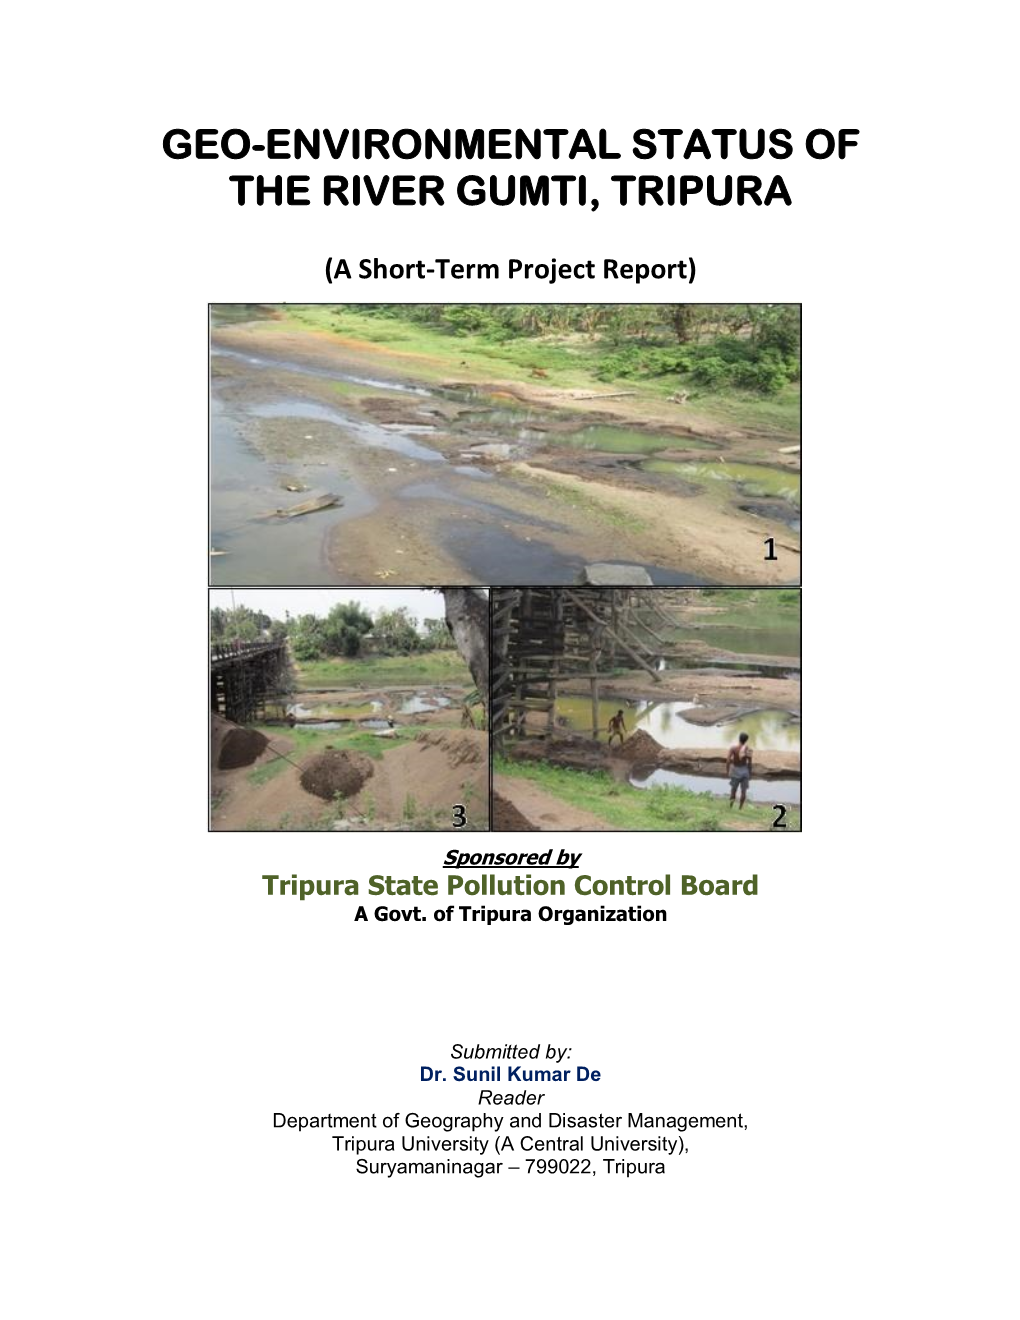 Geo-Environmental Status of the River Gumti, Tripura